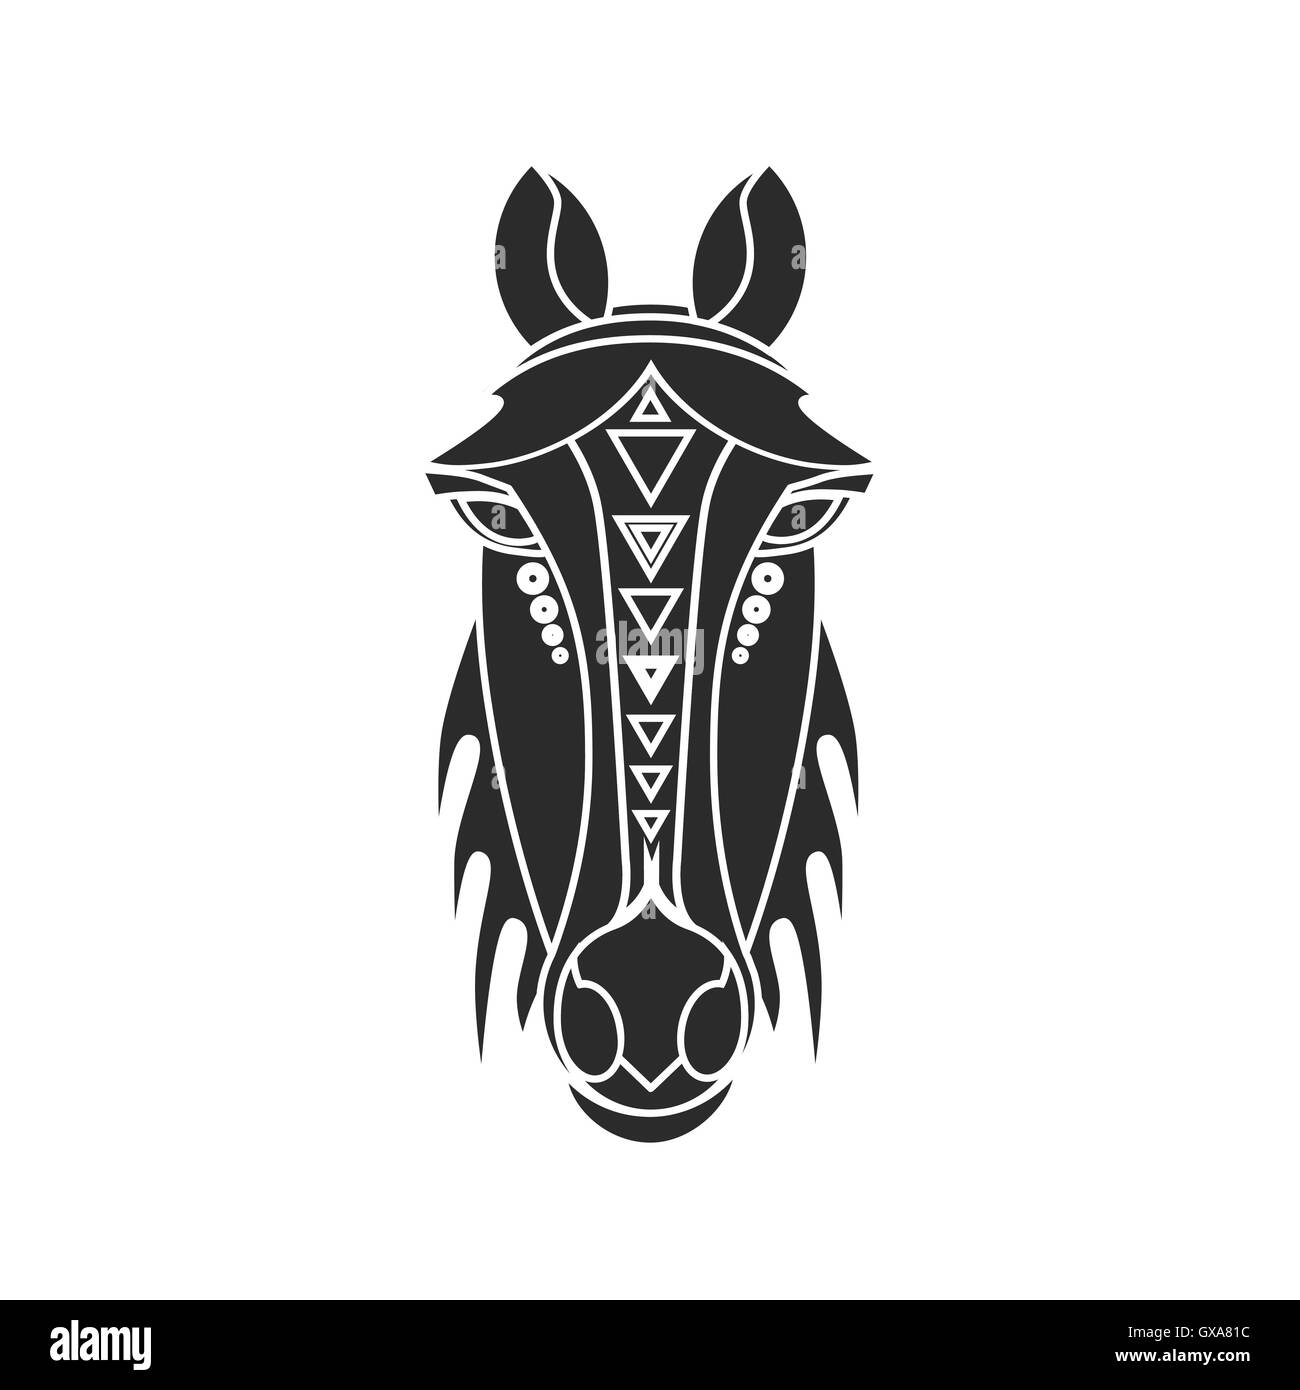 Geometrischen Vektor Pferd Porträt. Flache Darstellung auf dem weißen Hintergrund. Tattoo-Stil. Stock Vektor